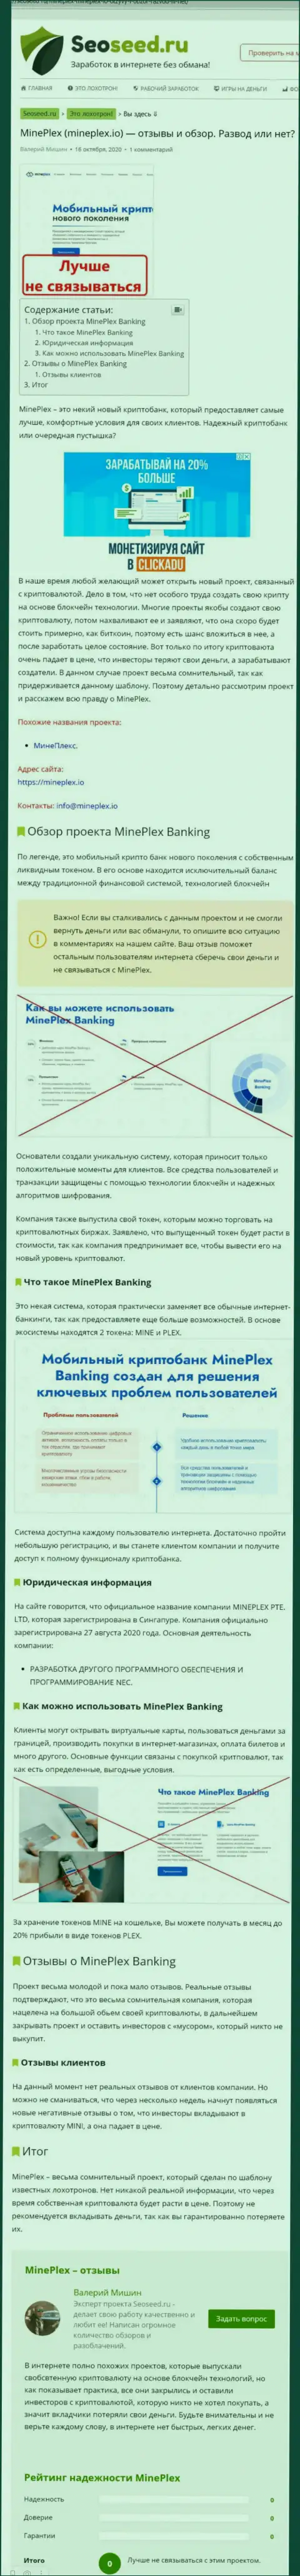 С компанией Mineplex PTE LTD не сможете заработать !!! Денежные средства крадут  - это ОБМАНЩИКИ !!! (статья с разбором)